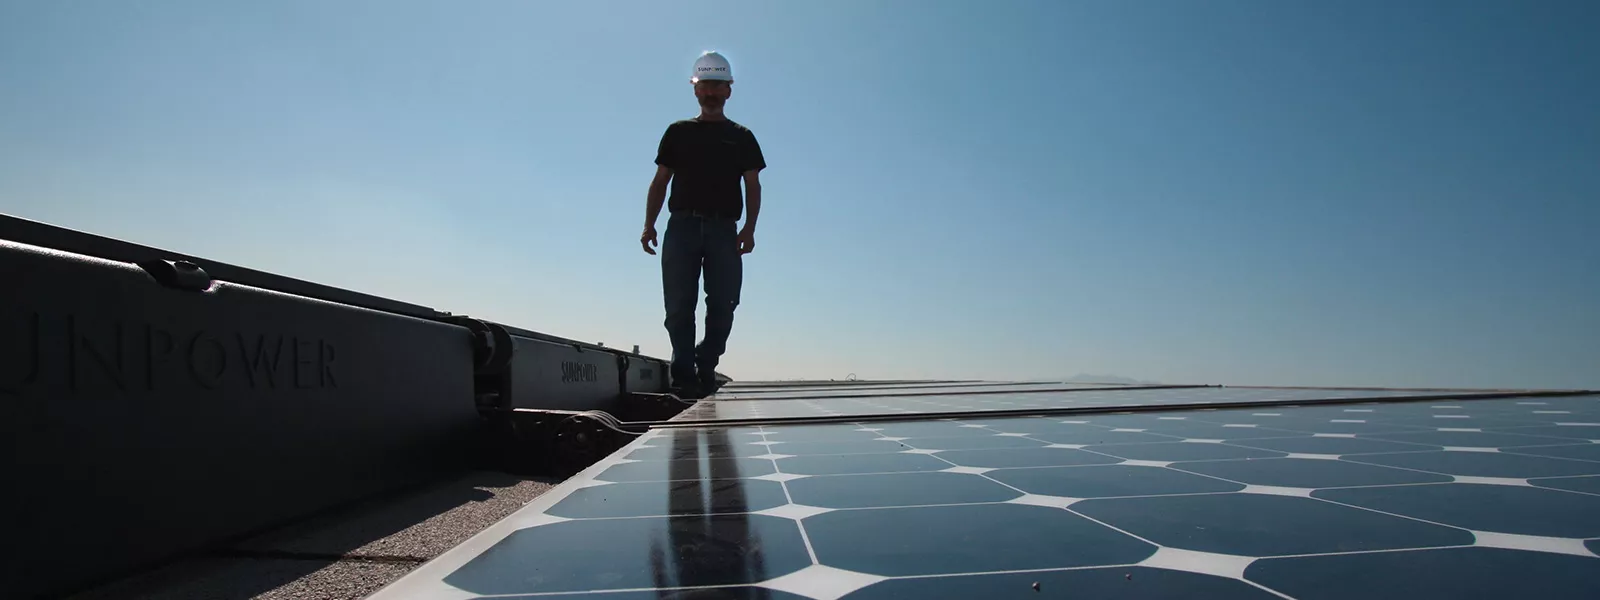 solar installer on rooftop installation